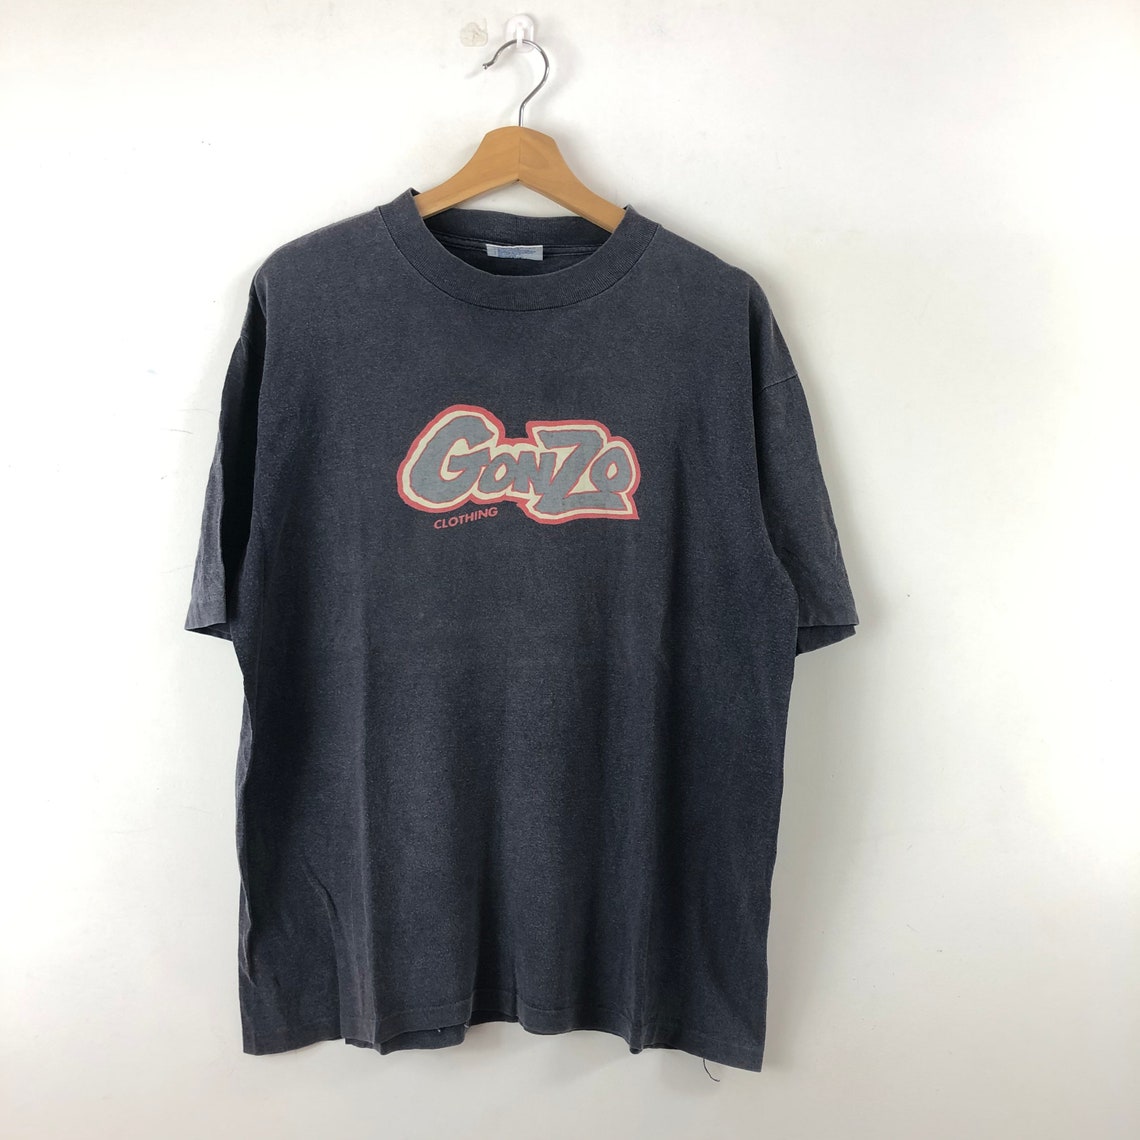 Vintage 90s Gonzo Shirt / Gonzo Clothing / Surf & Skate - Etsy